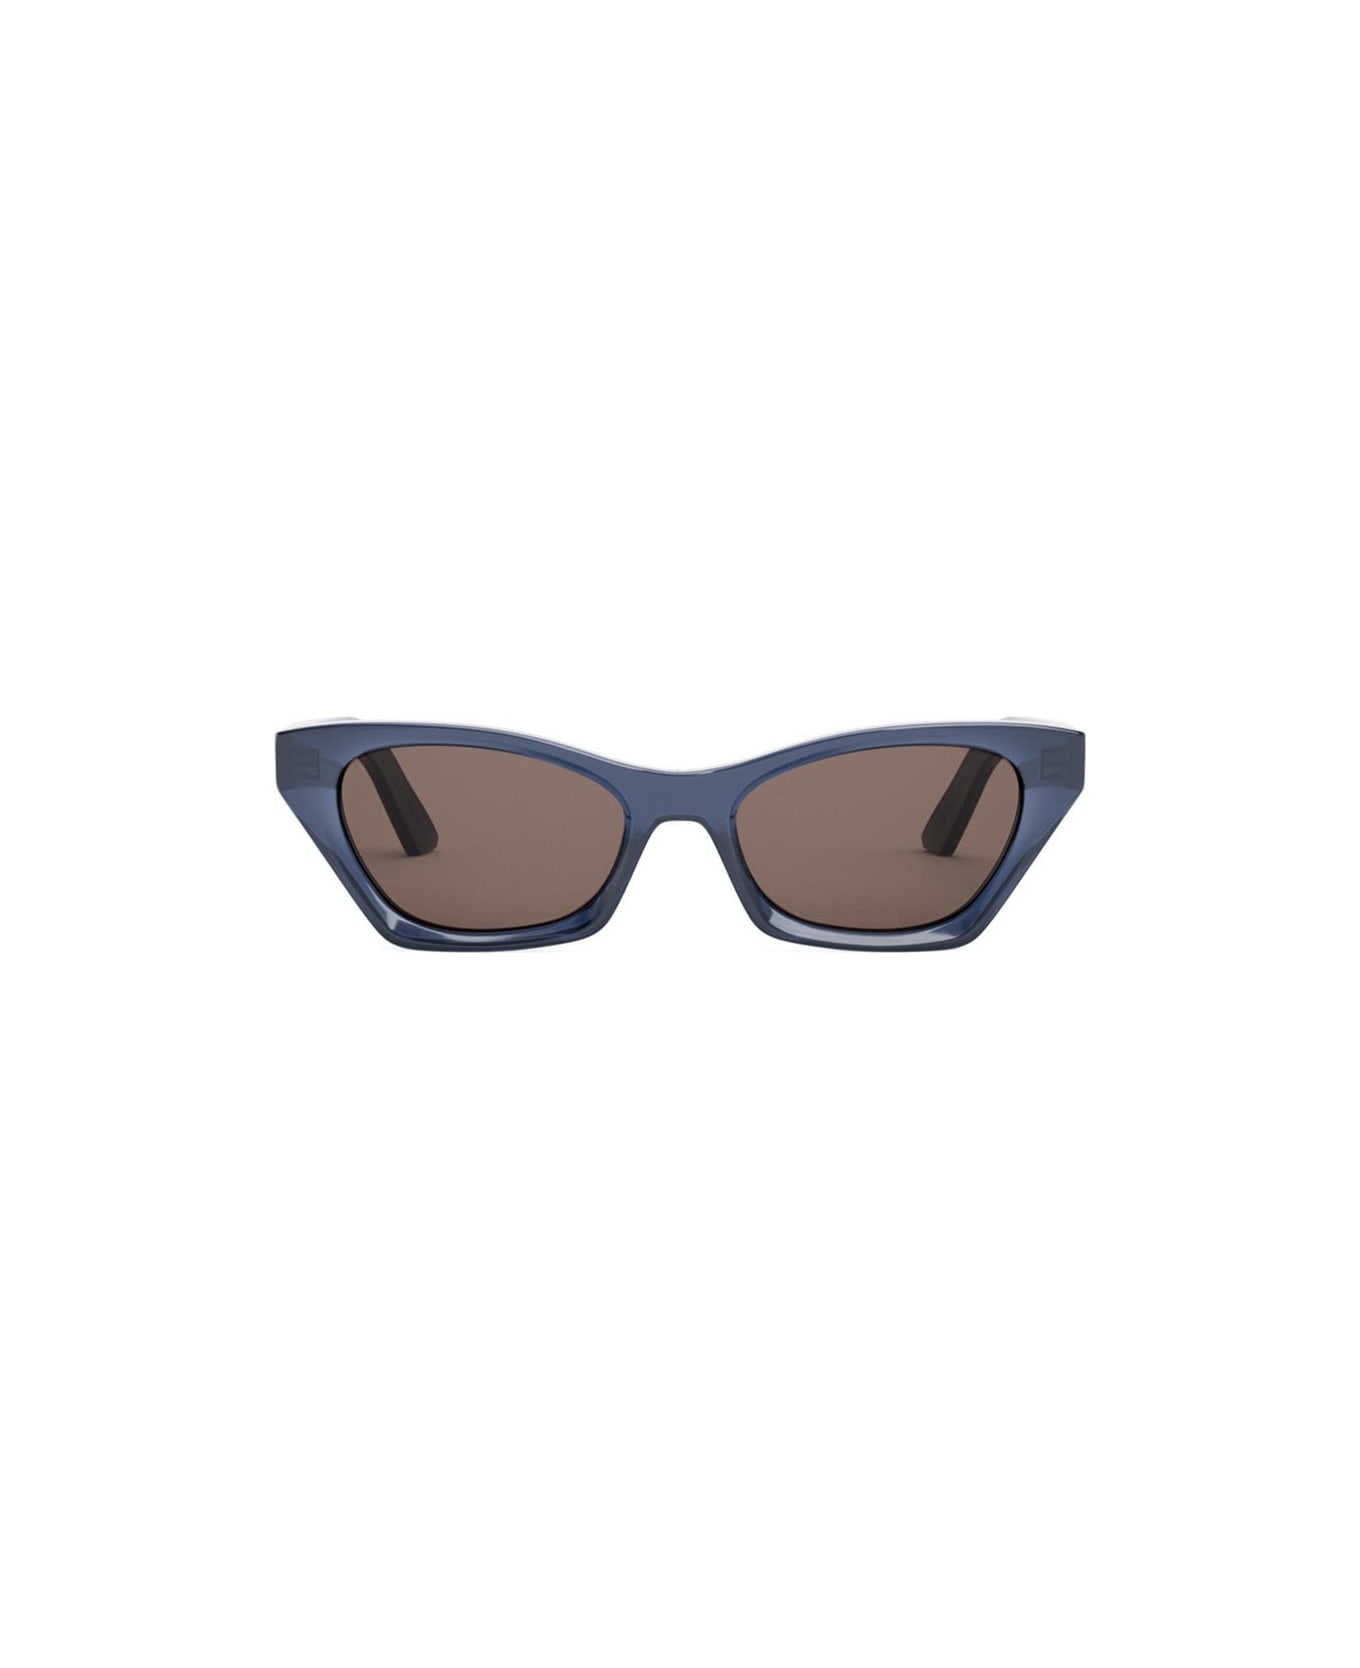 Dior Eyewear Sunglasses - Blu/Grigio